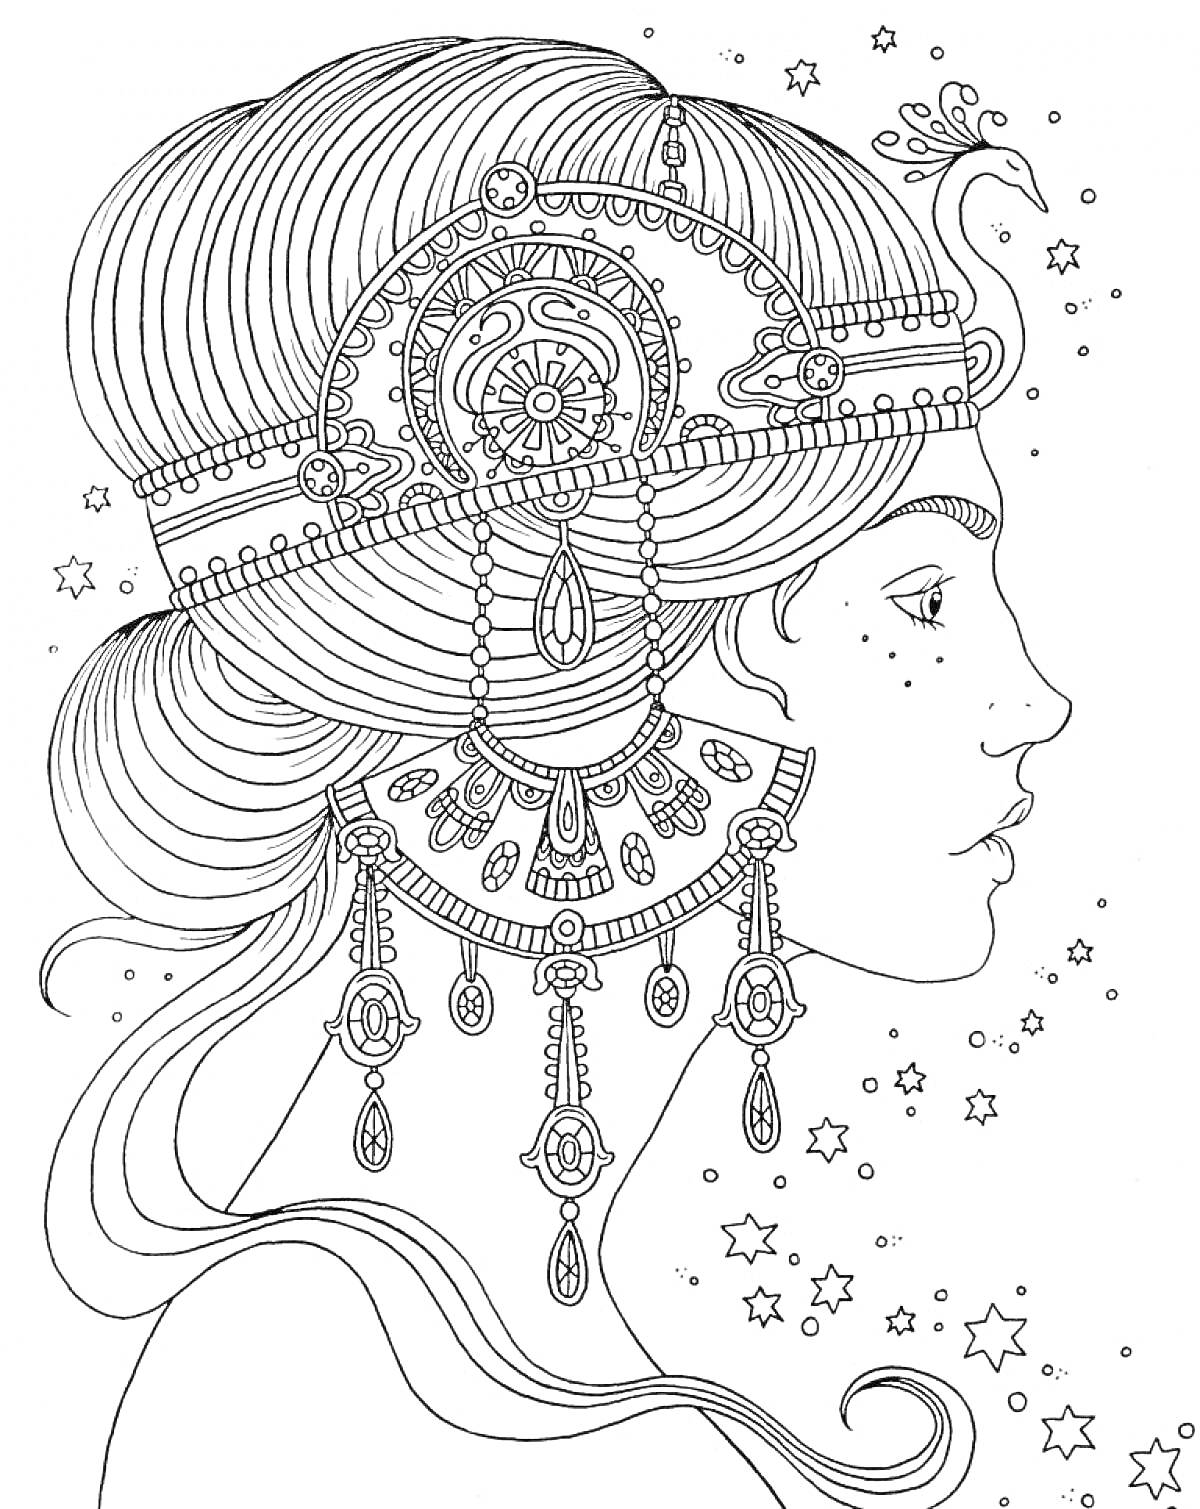 Портрет женщины с массивным украшением на голове и серьгами, окружённая звёздами